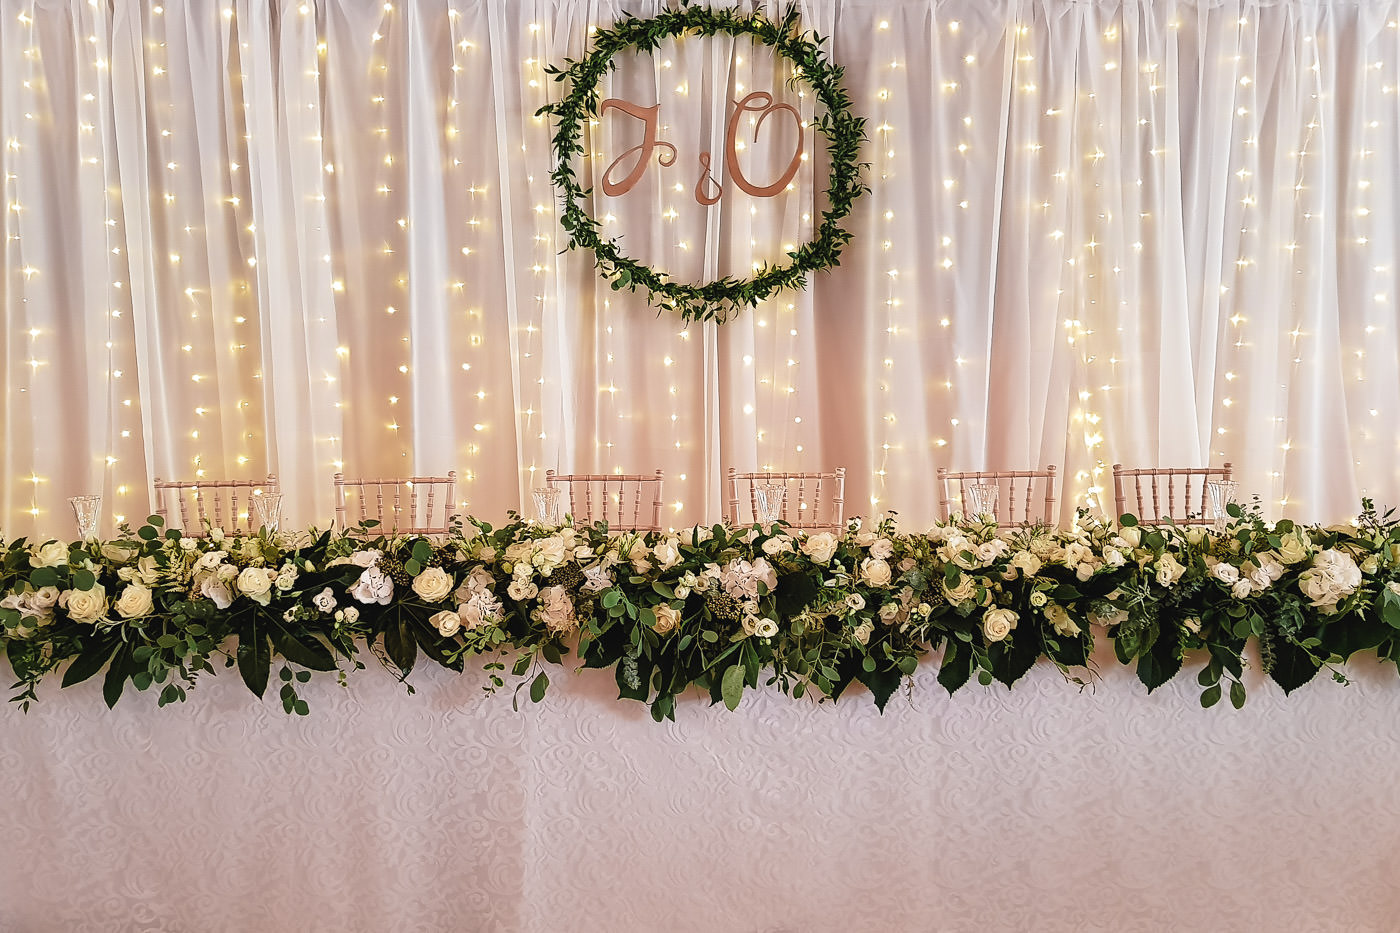 Susan&Sis decor svadobna vyzdoba – dekorovanie- white&green, greenery svadobna vyzdoba, bielo zelena svadba,